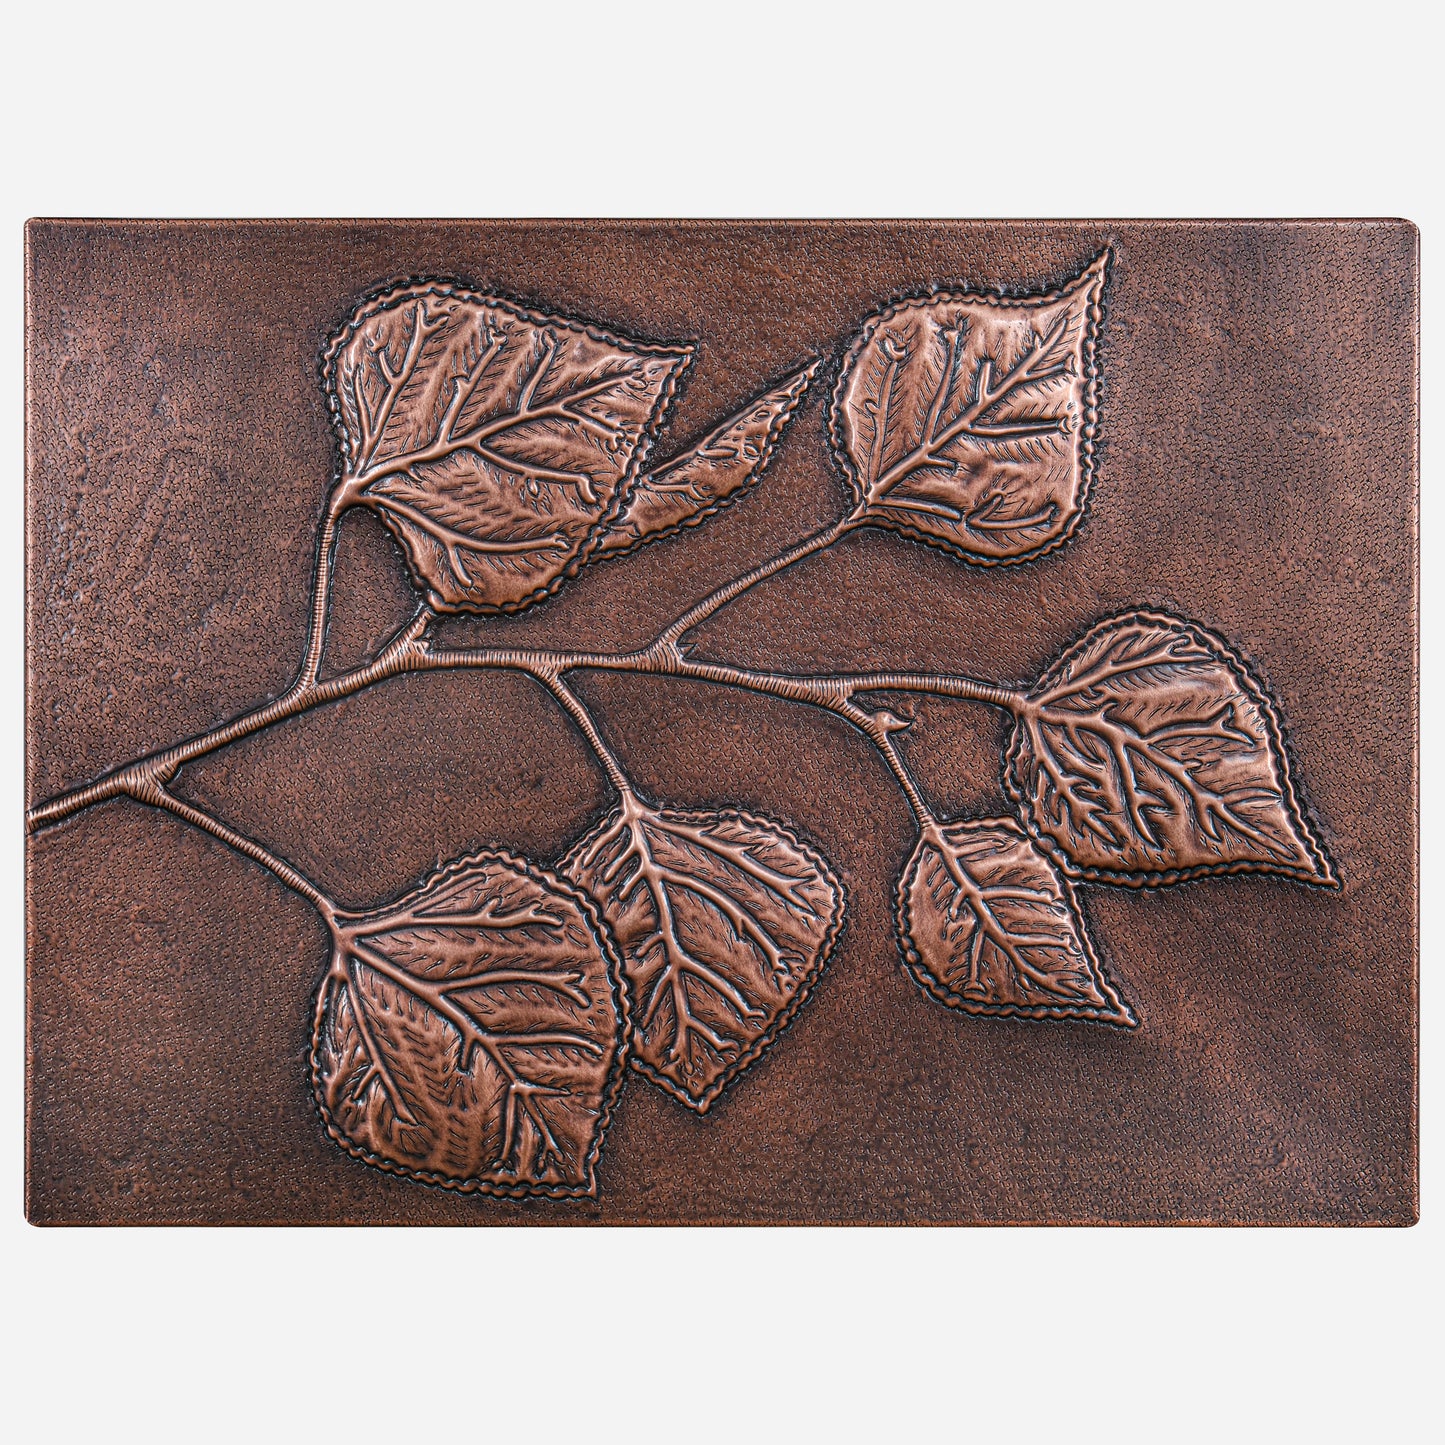 Backsplash Tile for Kitchen Aspen Leaves